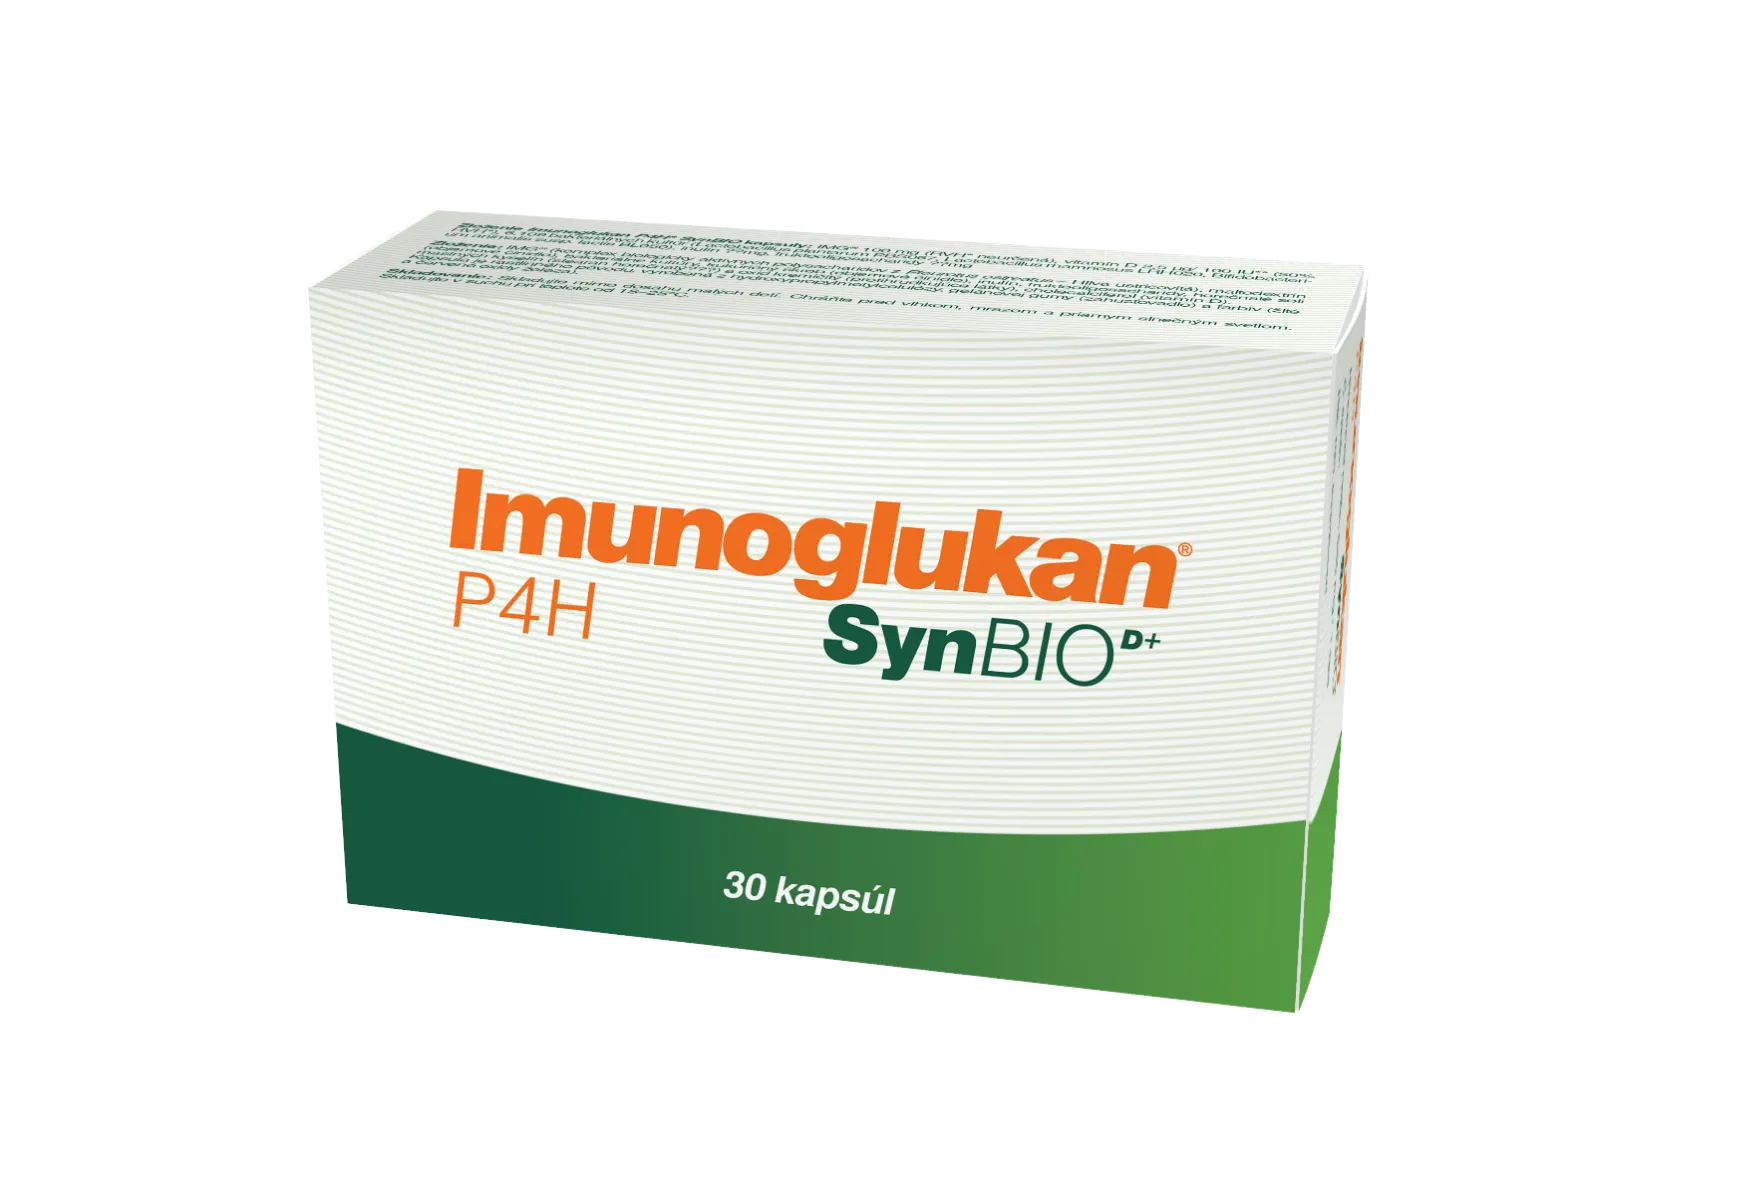 Imunoglukan P4H SynBIO D+, cps 1x30 ks